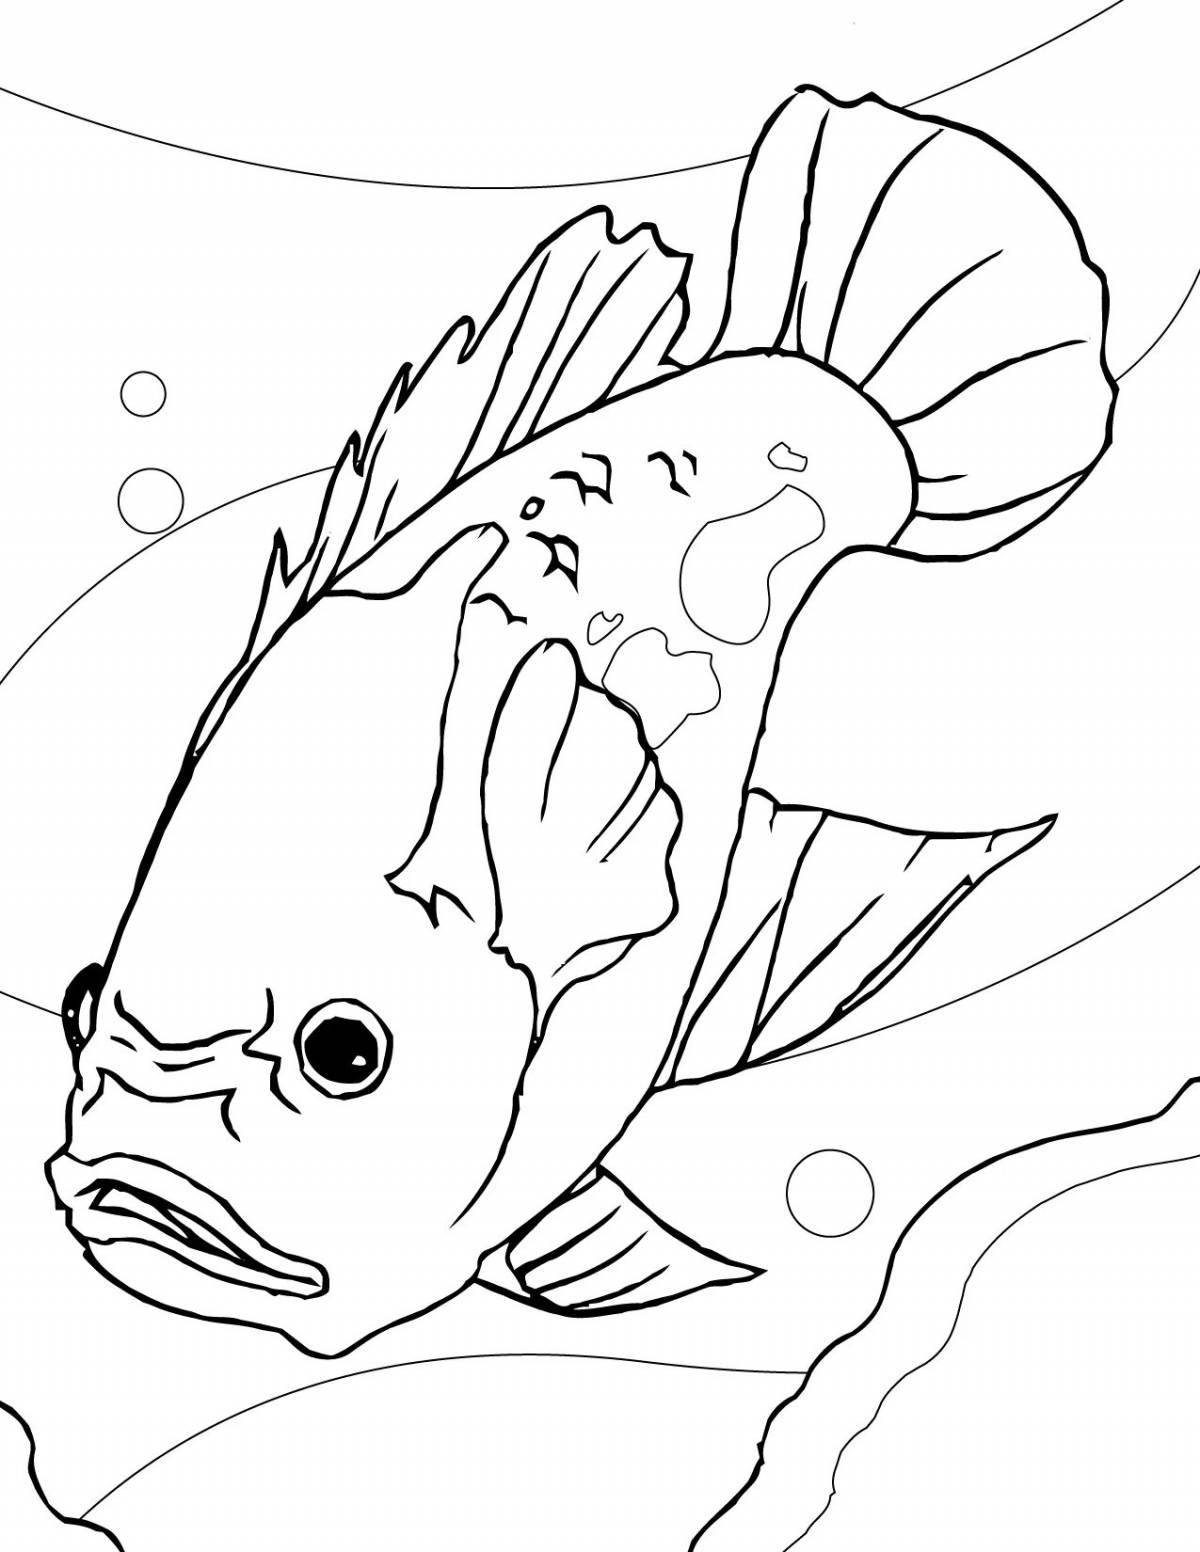 Fabulous aquarium fish coloring pages for kids